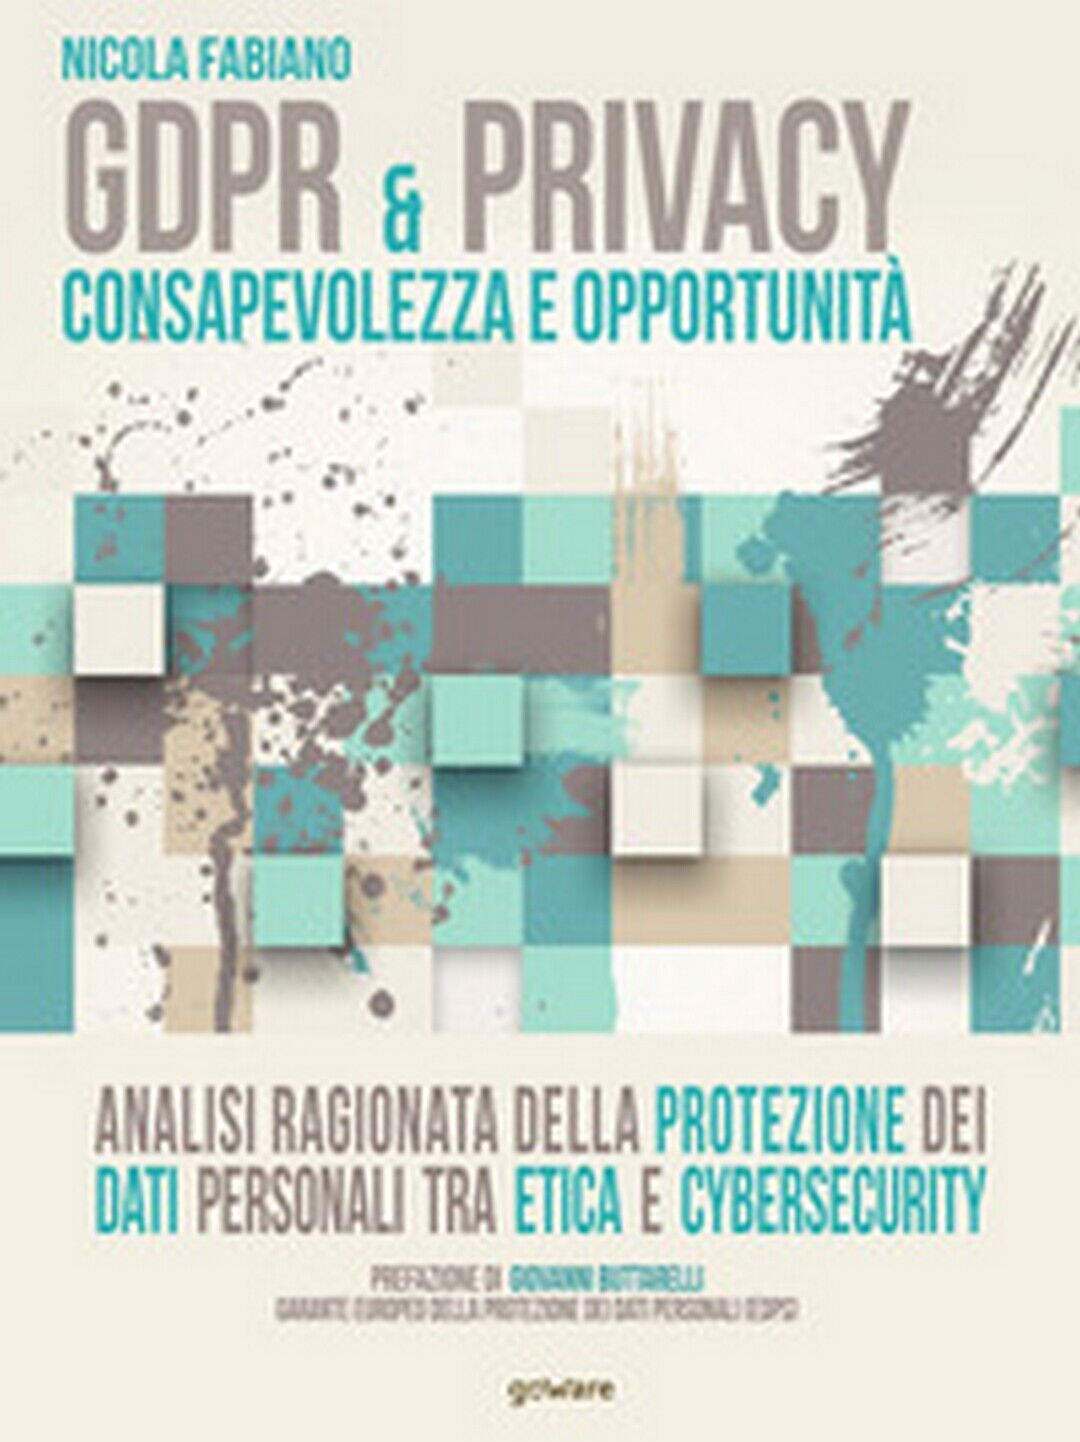 GDPR & privacy: consapevolezza e opportunit?. 